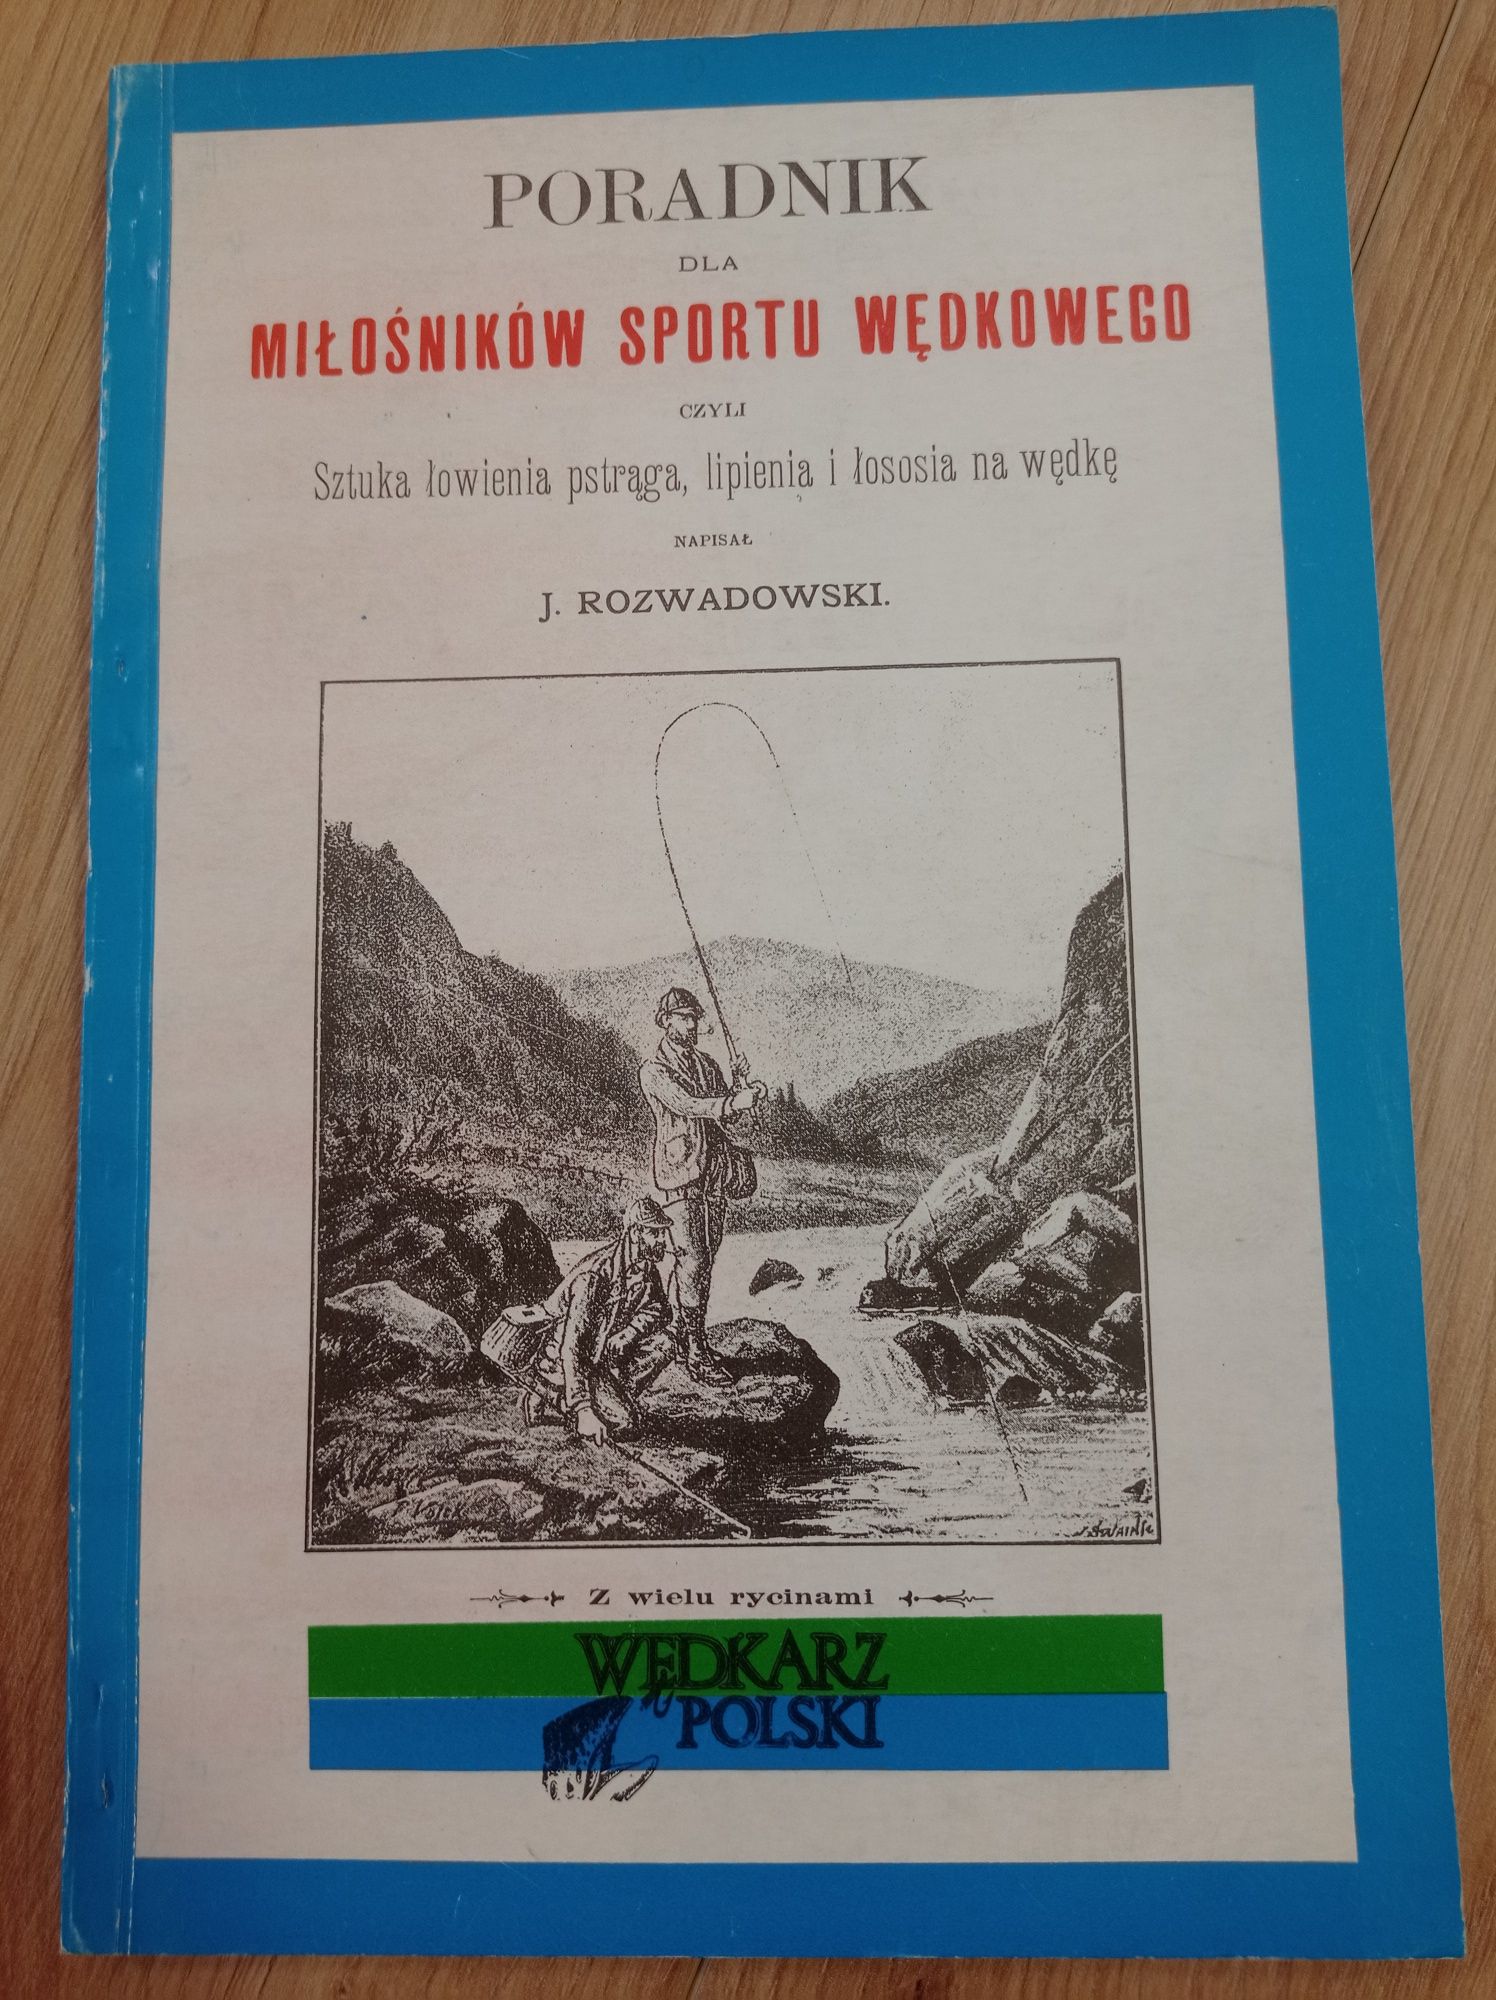 Sztuka łowienia pstrąga, lipienia i łososia na wędkę J. Rozwadowski